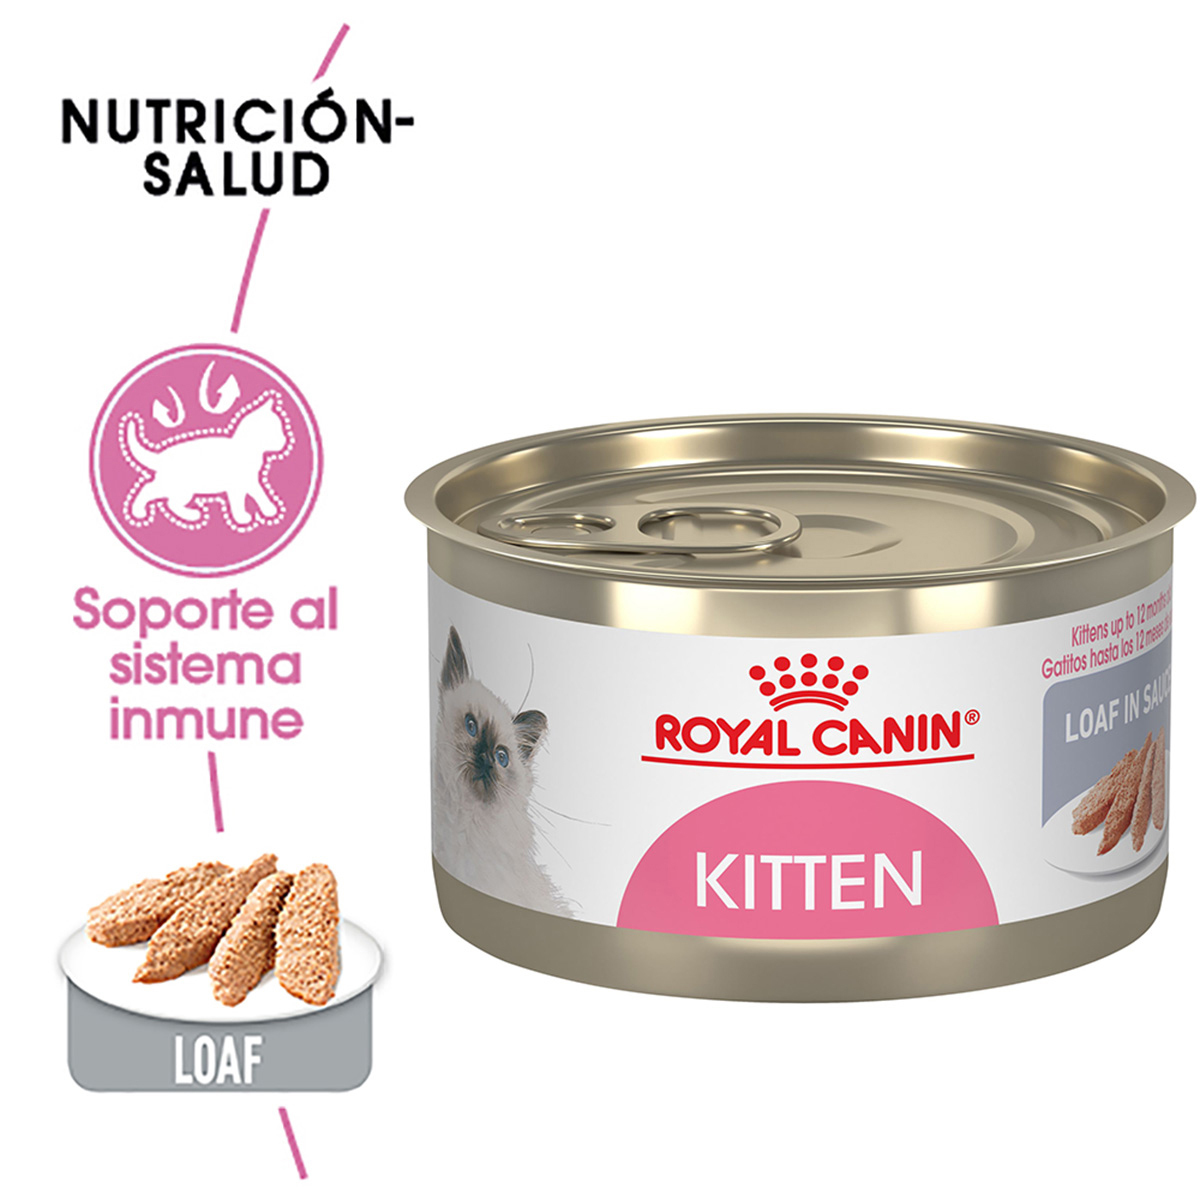 Royal Canin Kitten Alimento Húmedo para Gatito Receta Pollo, 145 g